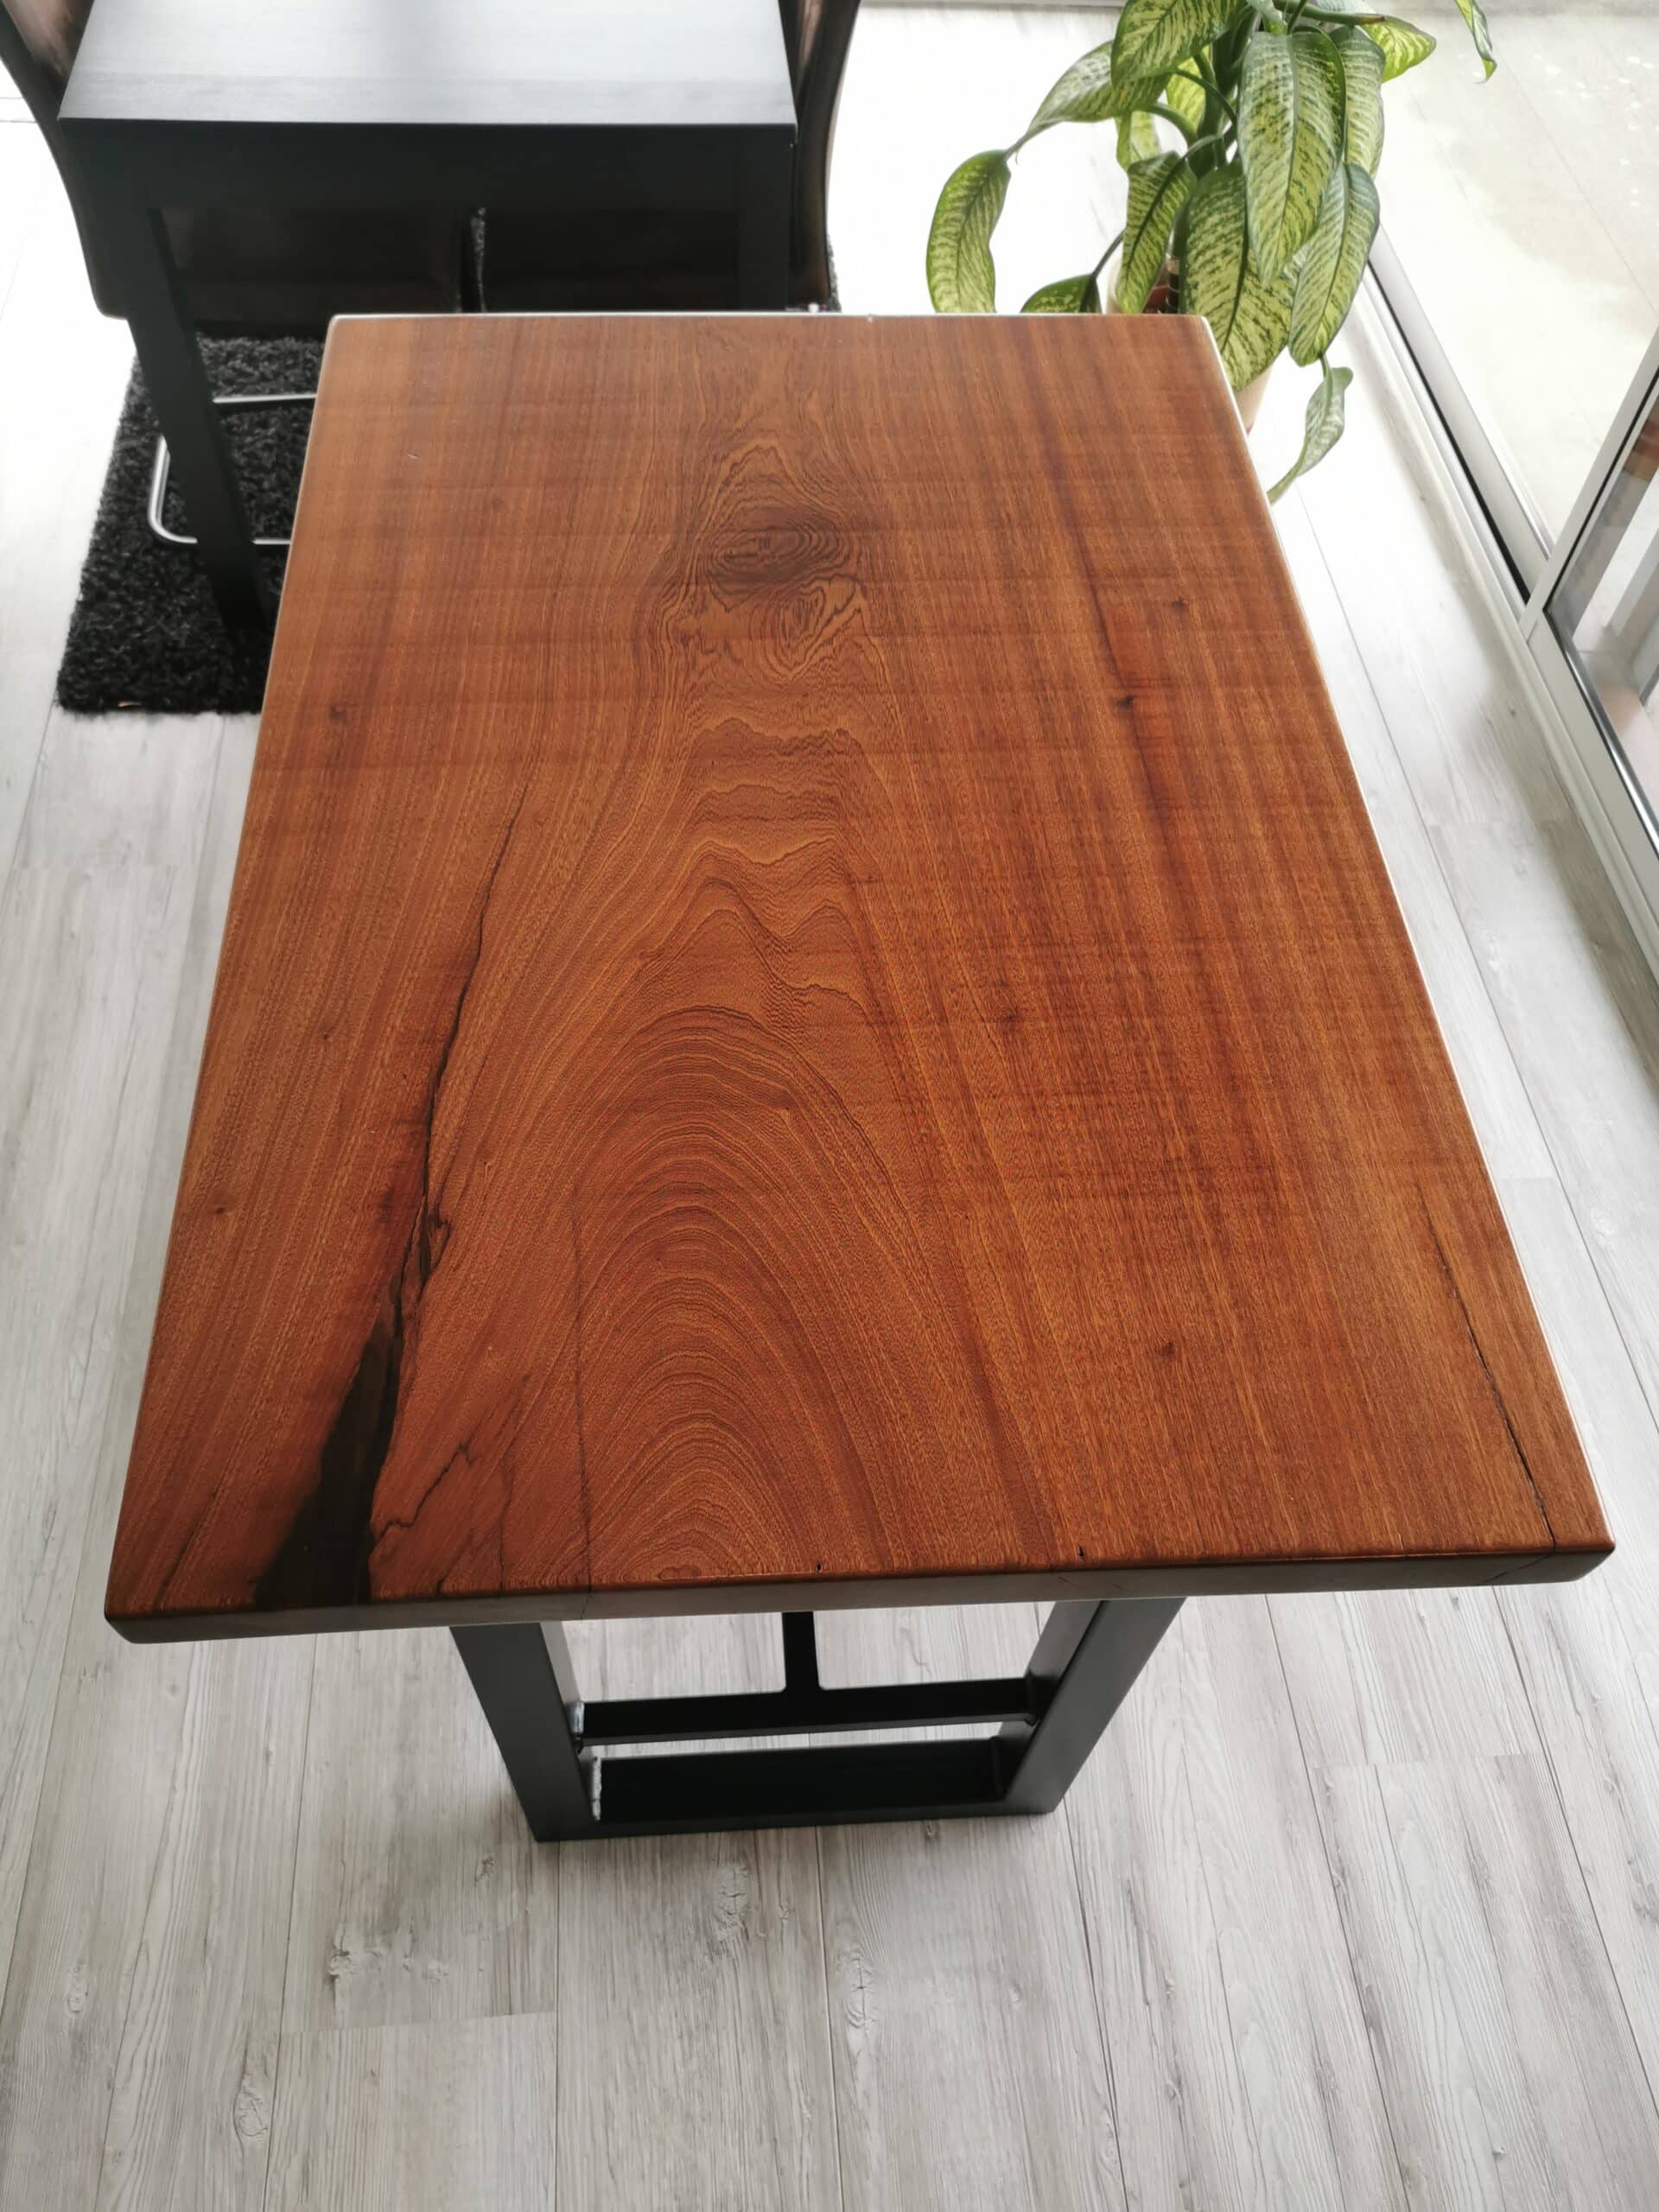 Epodex - France - La beauté de la nature rencontre le design contemporain  dans notre table en bois et en résine époxy, fabriquée de manière complexe  pour ressembler à un motif en